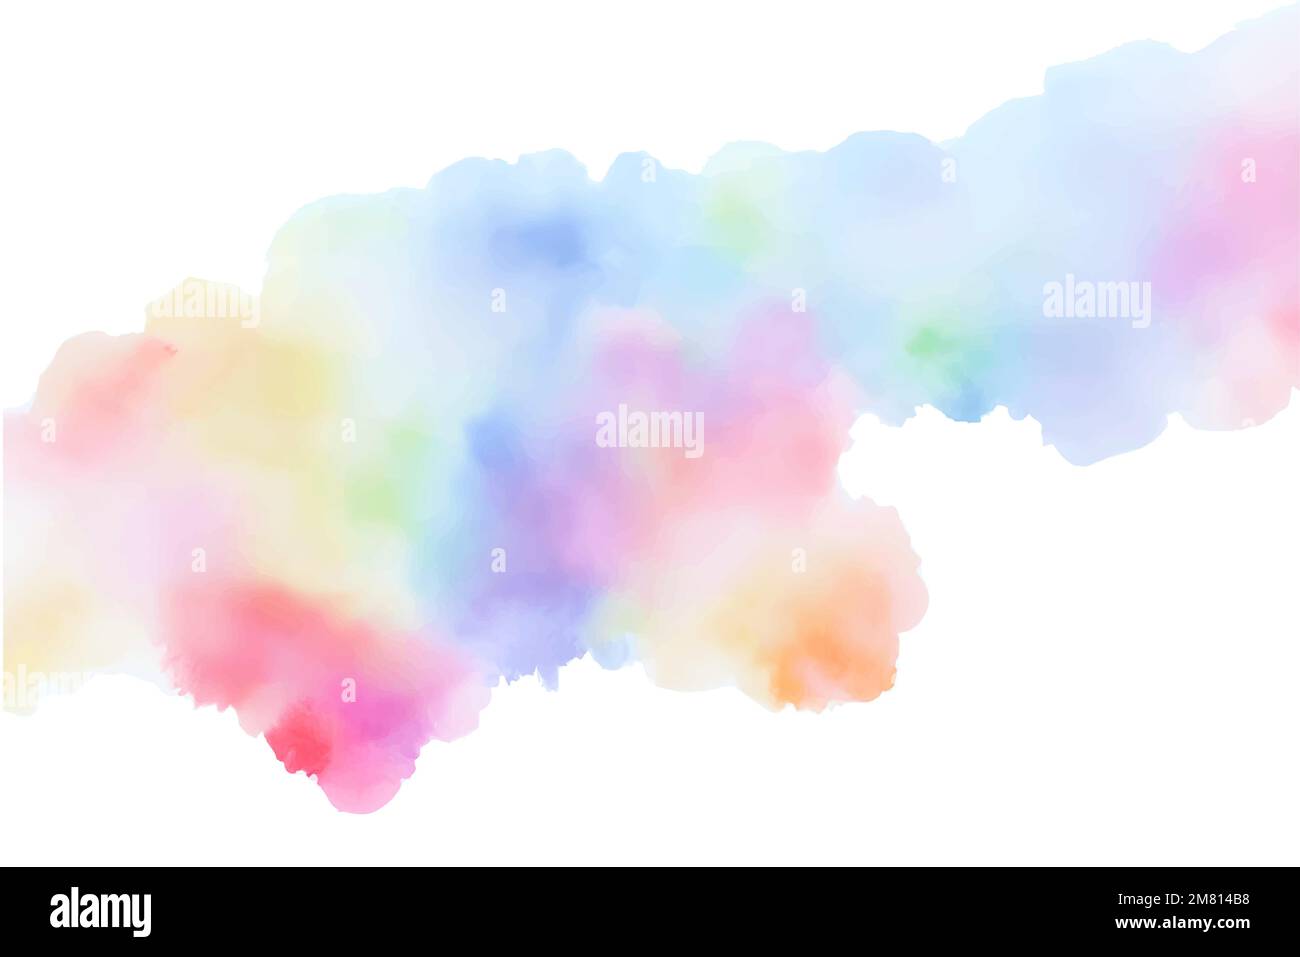 Handgefertigte Illustration von farbenfrohen pastellfarbenen Aquarellen, mehrfarbigen abstrakten Farbspritzern auf weißem Papierhintergrund, Vektor-Aquarellwolke. Stock Vektor